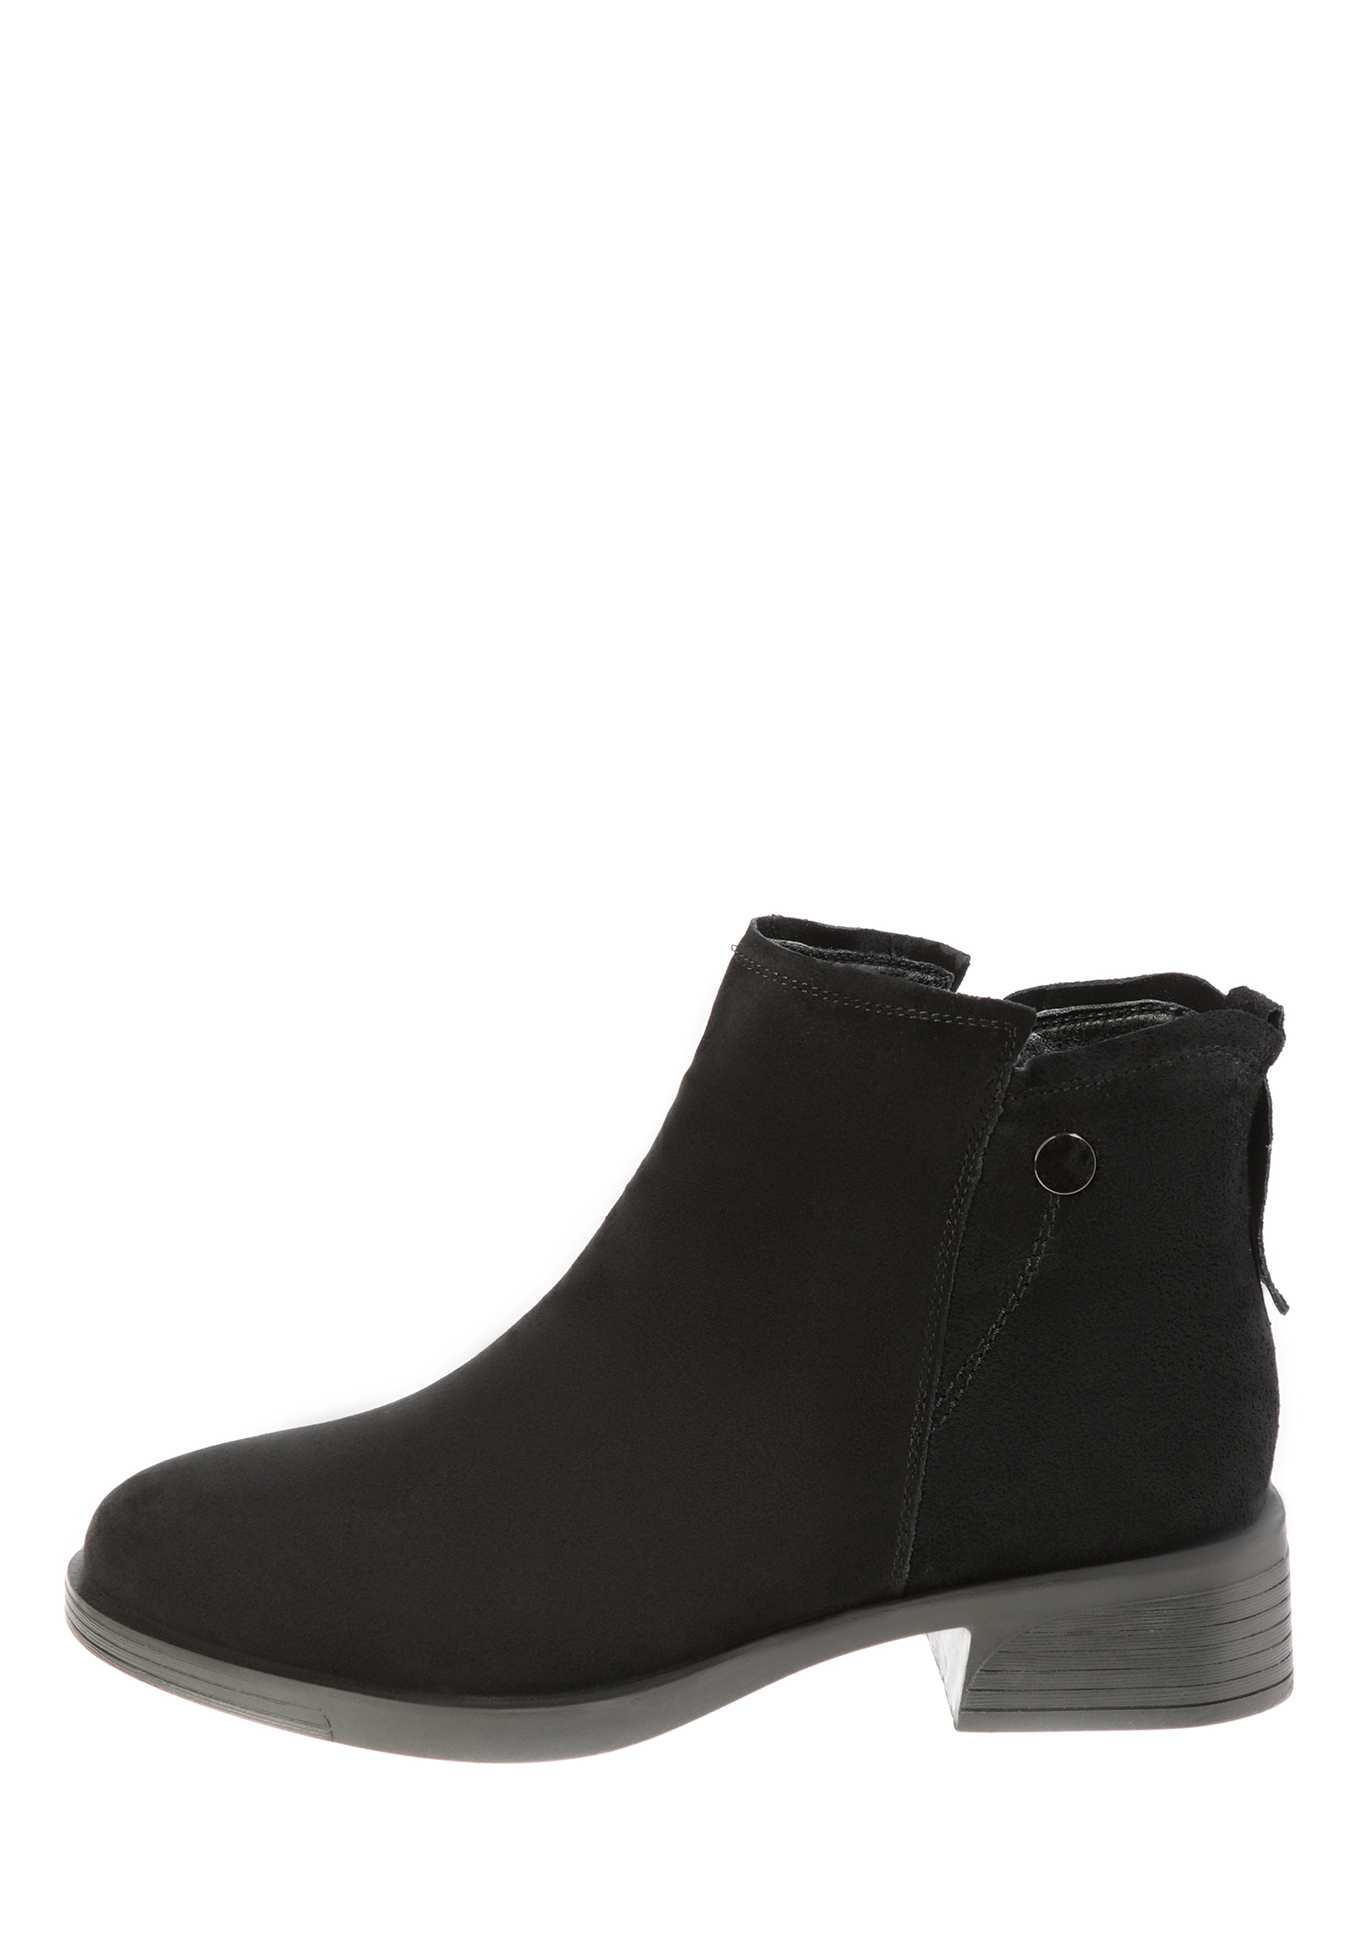 Ботинки «Юфез», женские Makfine, размер 36, цвет черный - фото 4